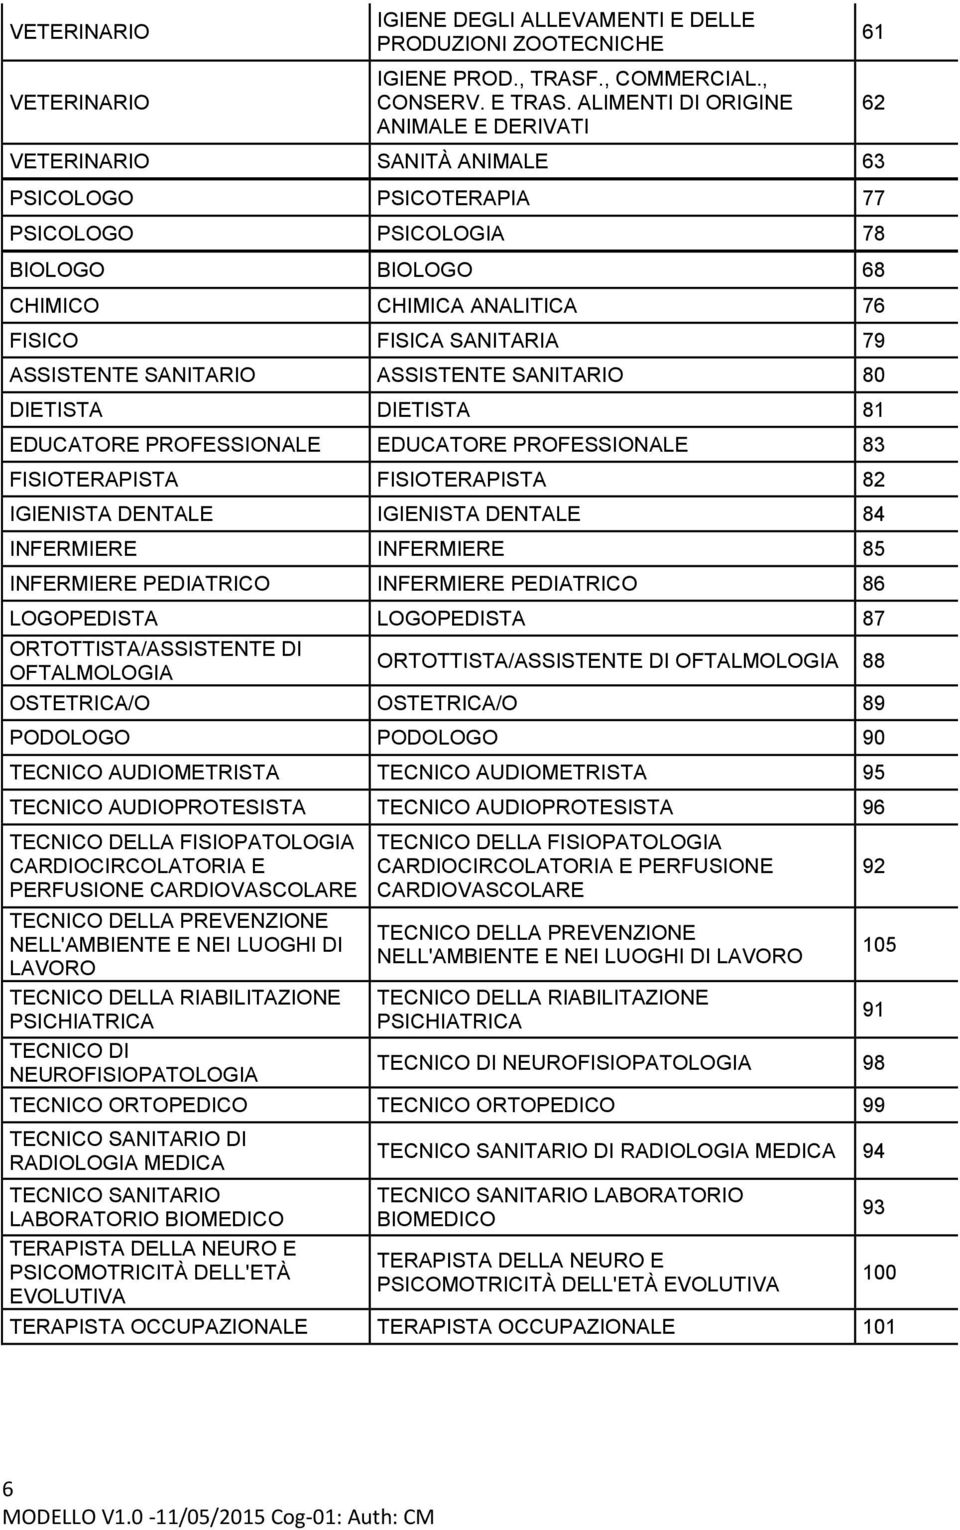 ASSISTENTE SANITARIO ASSISTENTE SANITARIO 80 DIETISTA DIETISTA 81 EDUCATORE PROFESSIONALE EDUCATORE PROFESSIONALE 83 FISIOTERAPISTA FISIOTERAPISTA 82 IGIENISTA DENTALE IGIENISTA DENTALE 84 INFERMIERE